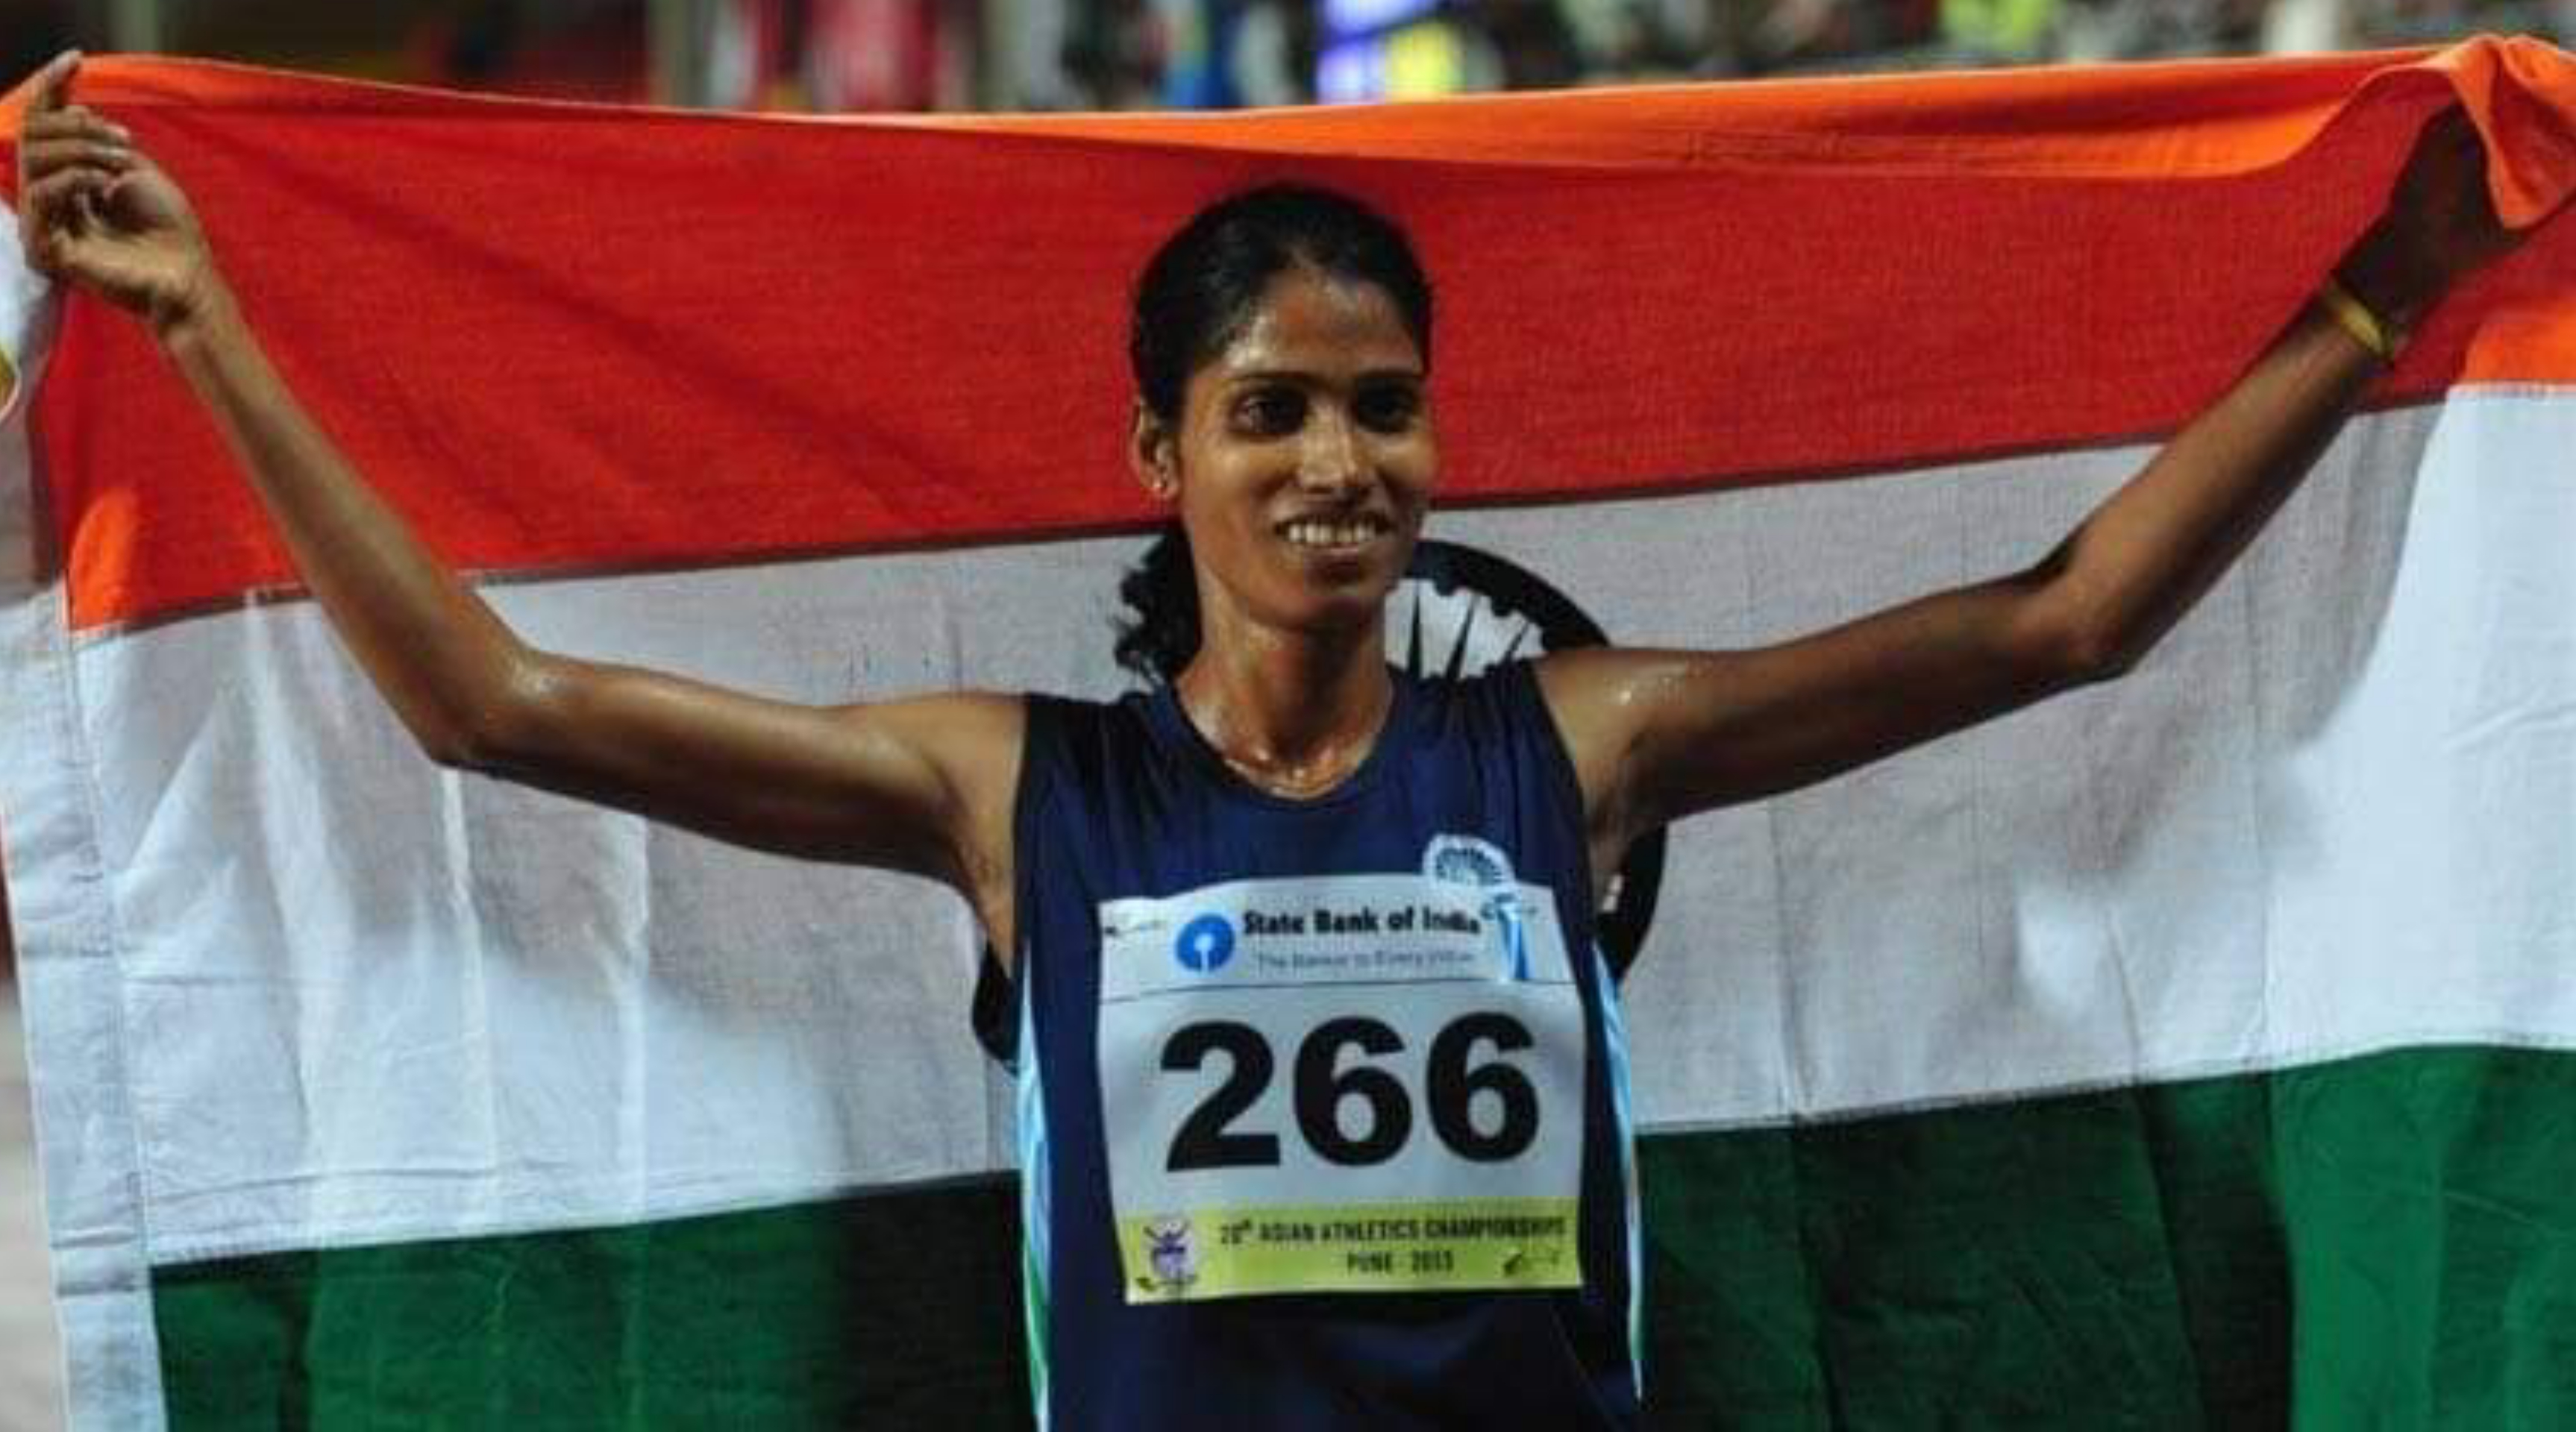 अंतरराष्ट्रीय एथलीट सुधा सिंह को पद्मश्री पुरस्कार मिलने की घोषणा होने पर जिले में खुशी की लहर